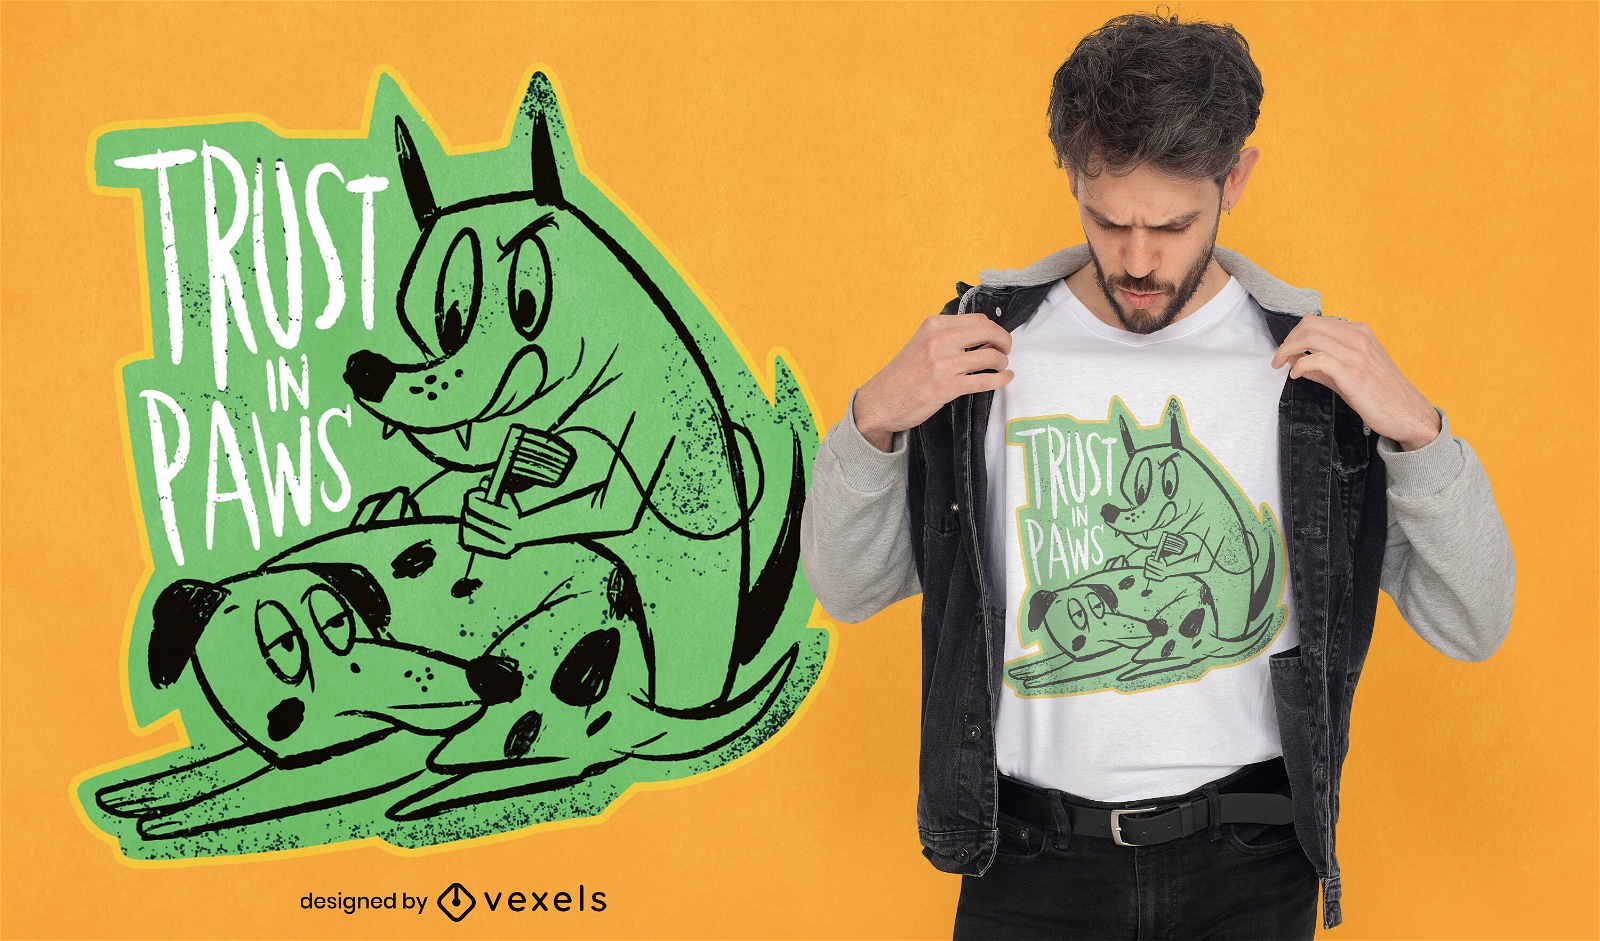 Baixar Vetor De Design De Camiseta De Desenho Animado De Cachorro De Xadrez